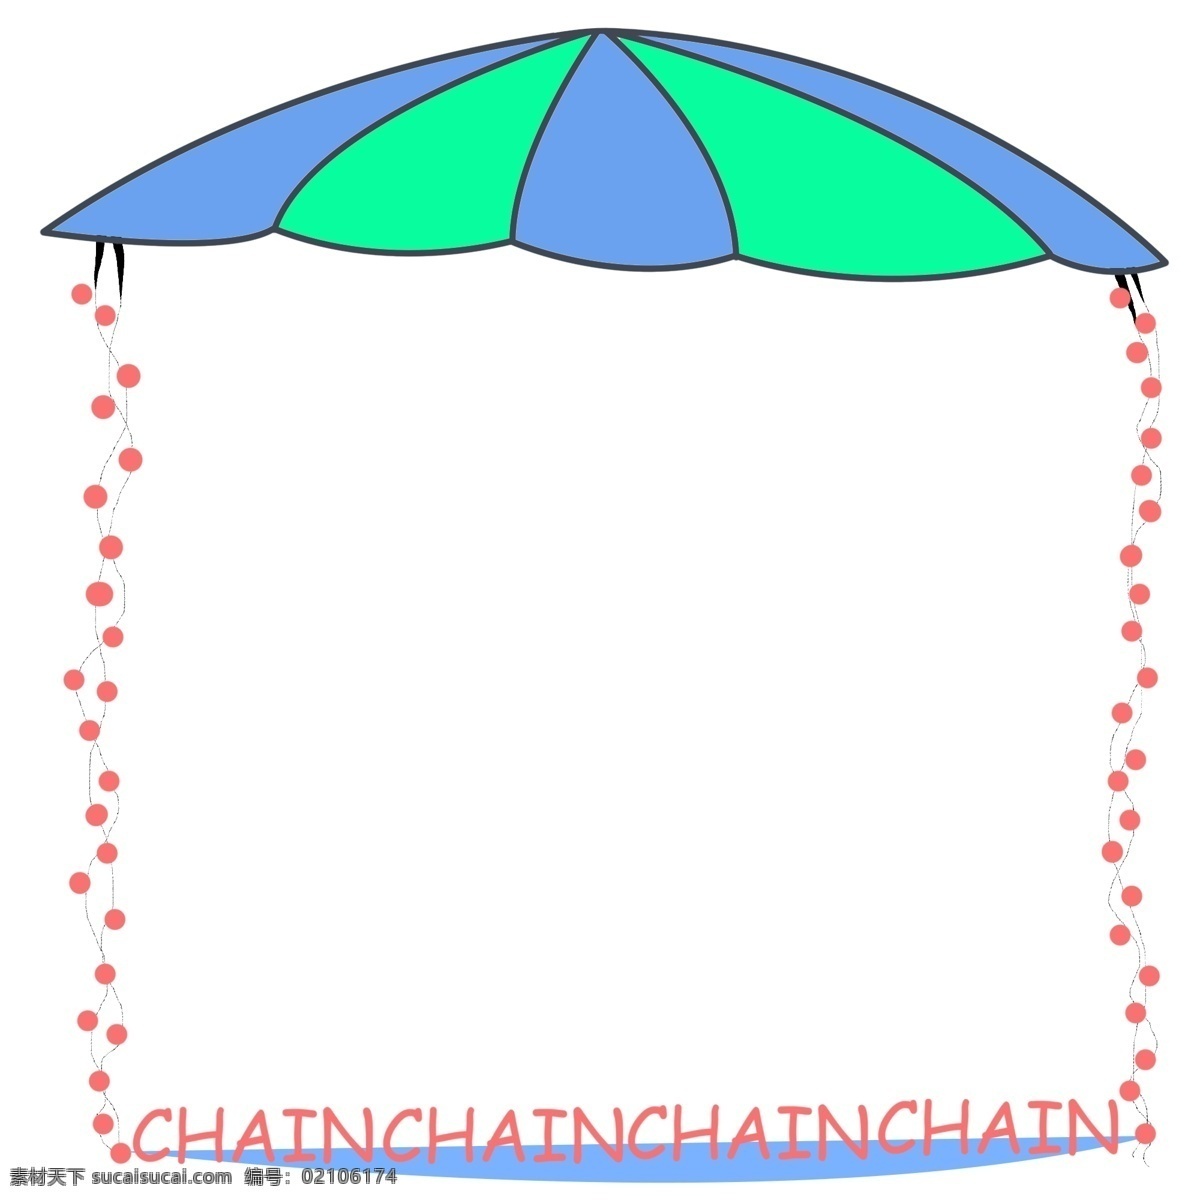 创意 雨伞 边框 插画 雨伞边框 蓝色 绿色 伞 漂亮雨伞边框 创意雨伞边框 伞状